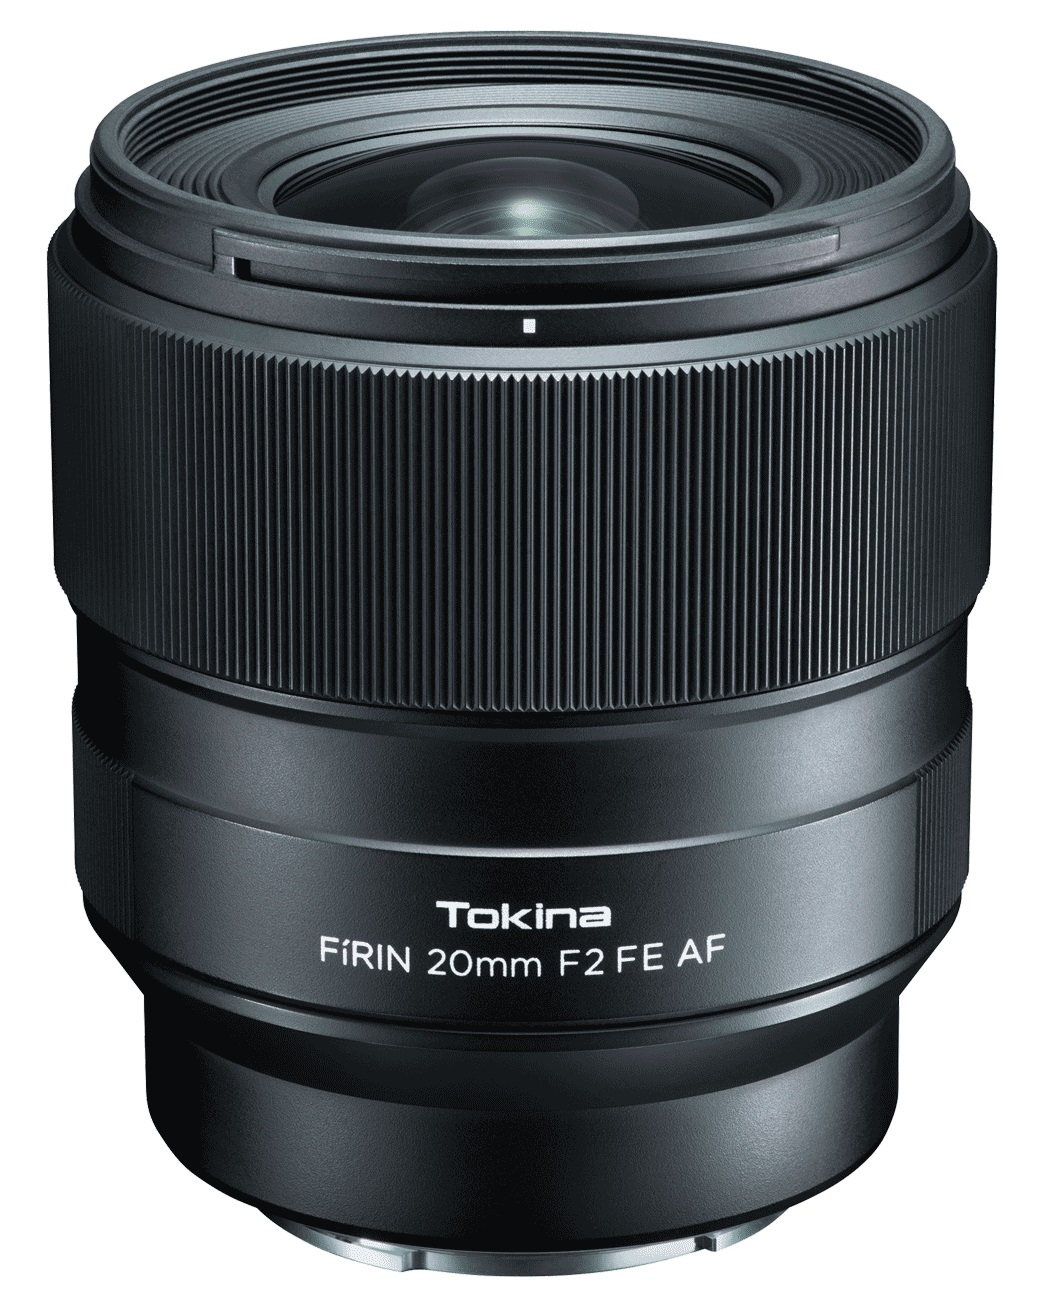 Объектив Tokina FIRIN 20mm F2 FE AF для Sony автофокус объектив sony sel 85f18 fe 85 mm f 1 8